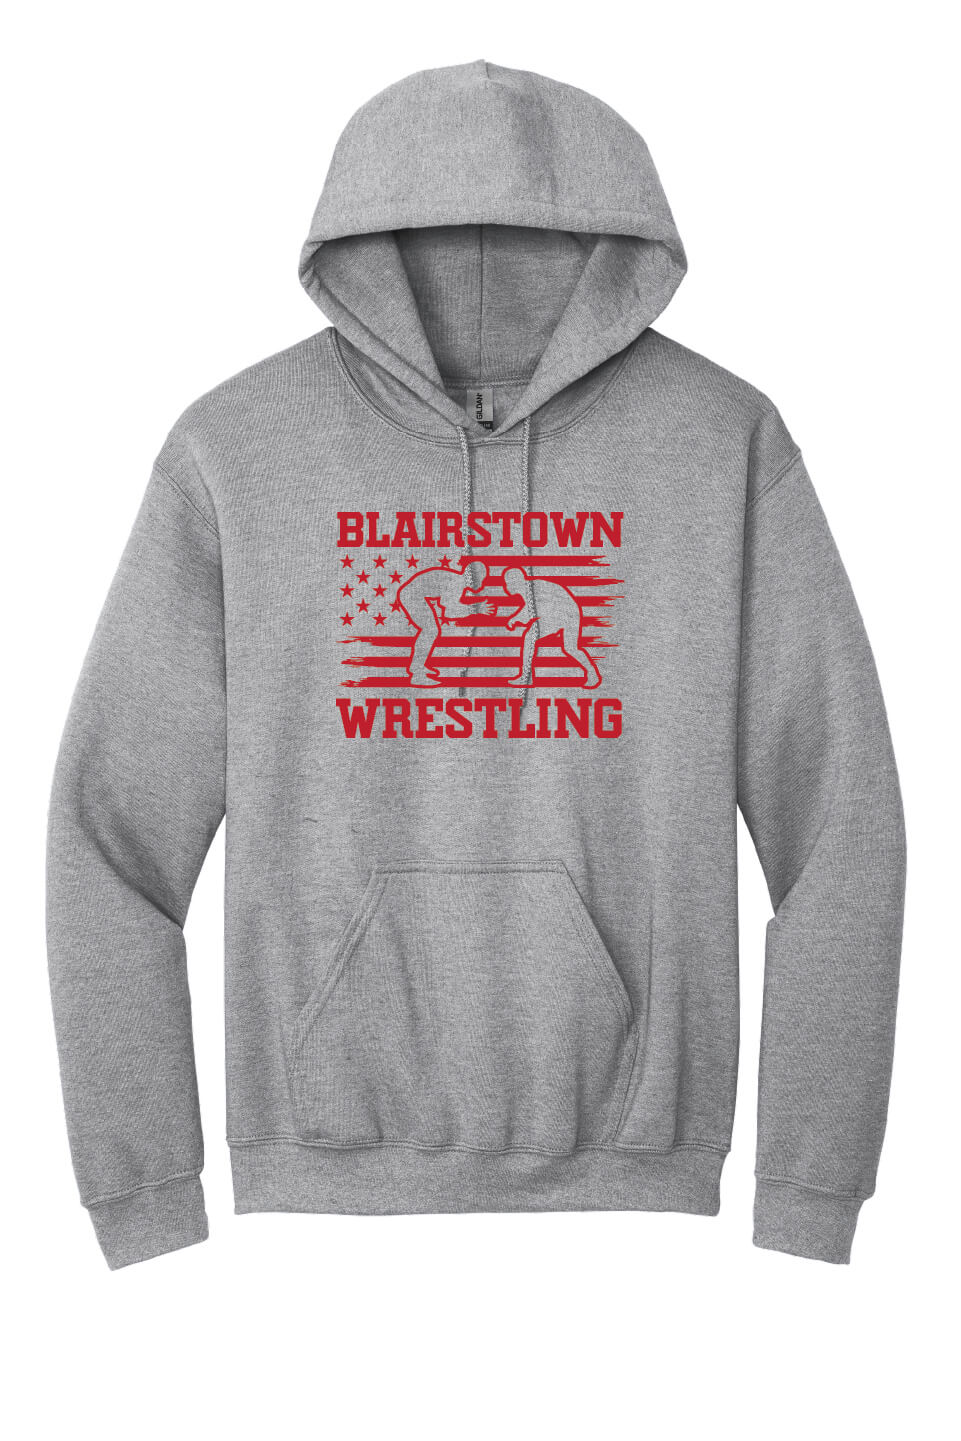 Blairstown Wrestling Flag Hoodie gray